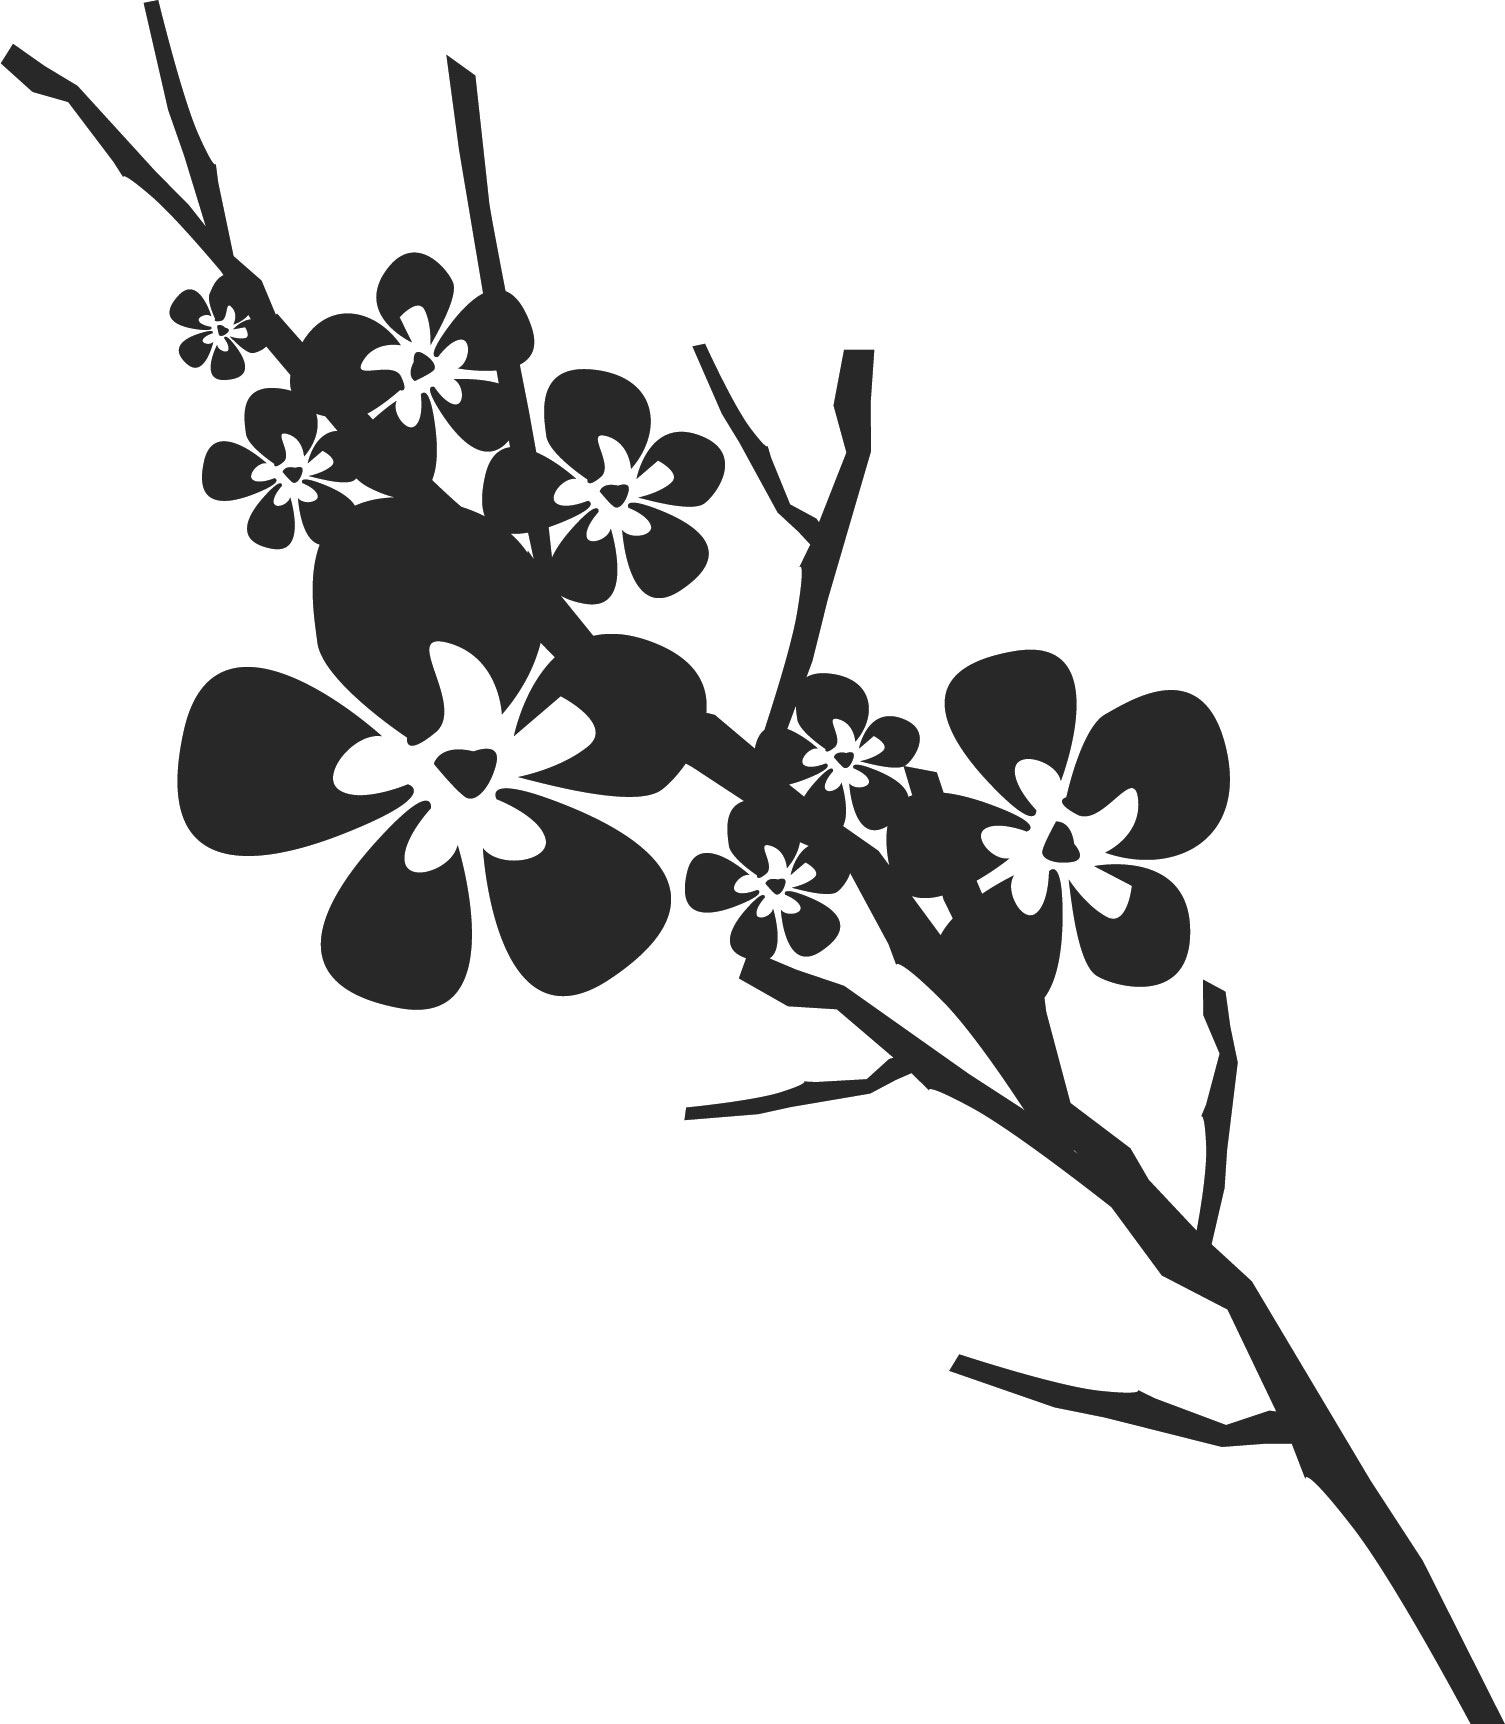 花のイラスト フリー素材 白黒 モノクロno 613 白黒 木枝